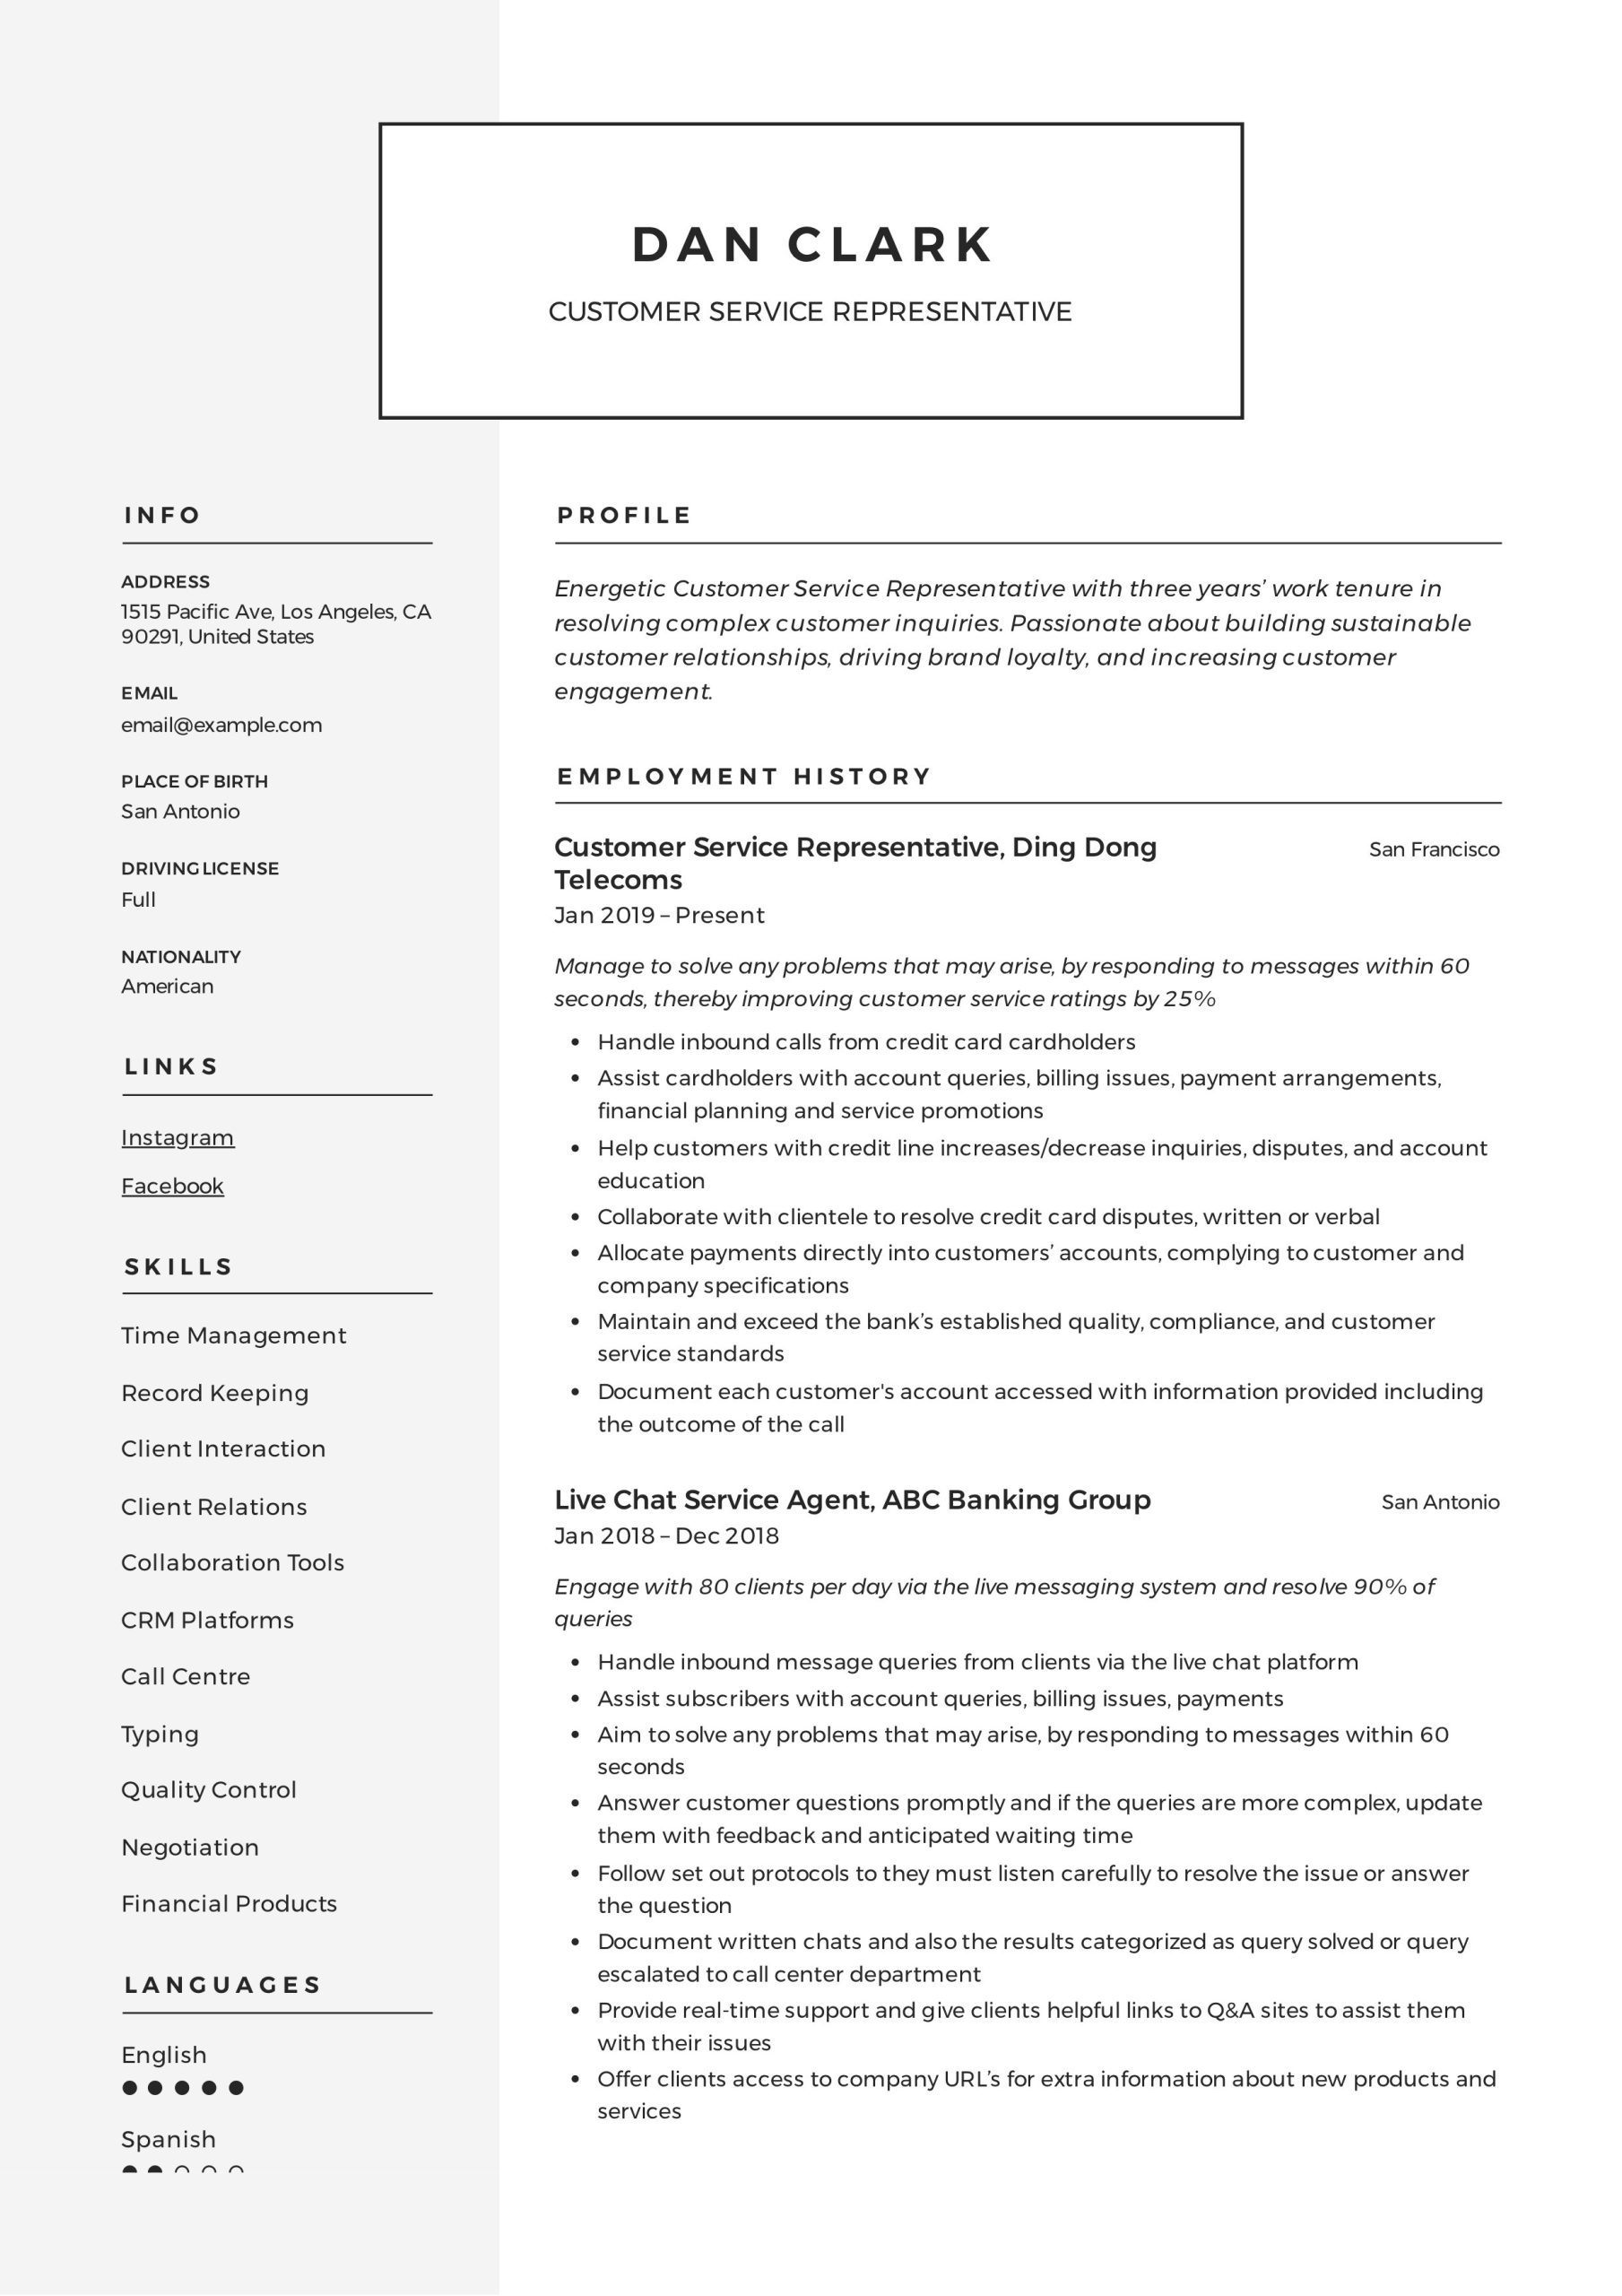 Resume Sample for Enterprise Senior Customer Service Representative Customer Service Representative Resume & Guide 12 Pdf 2022